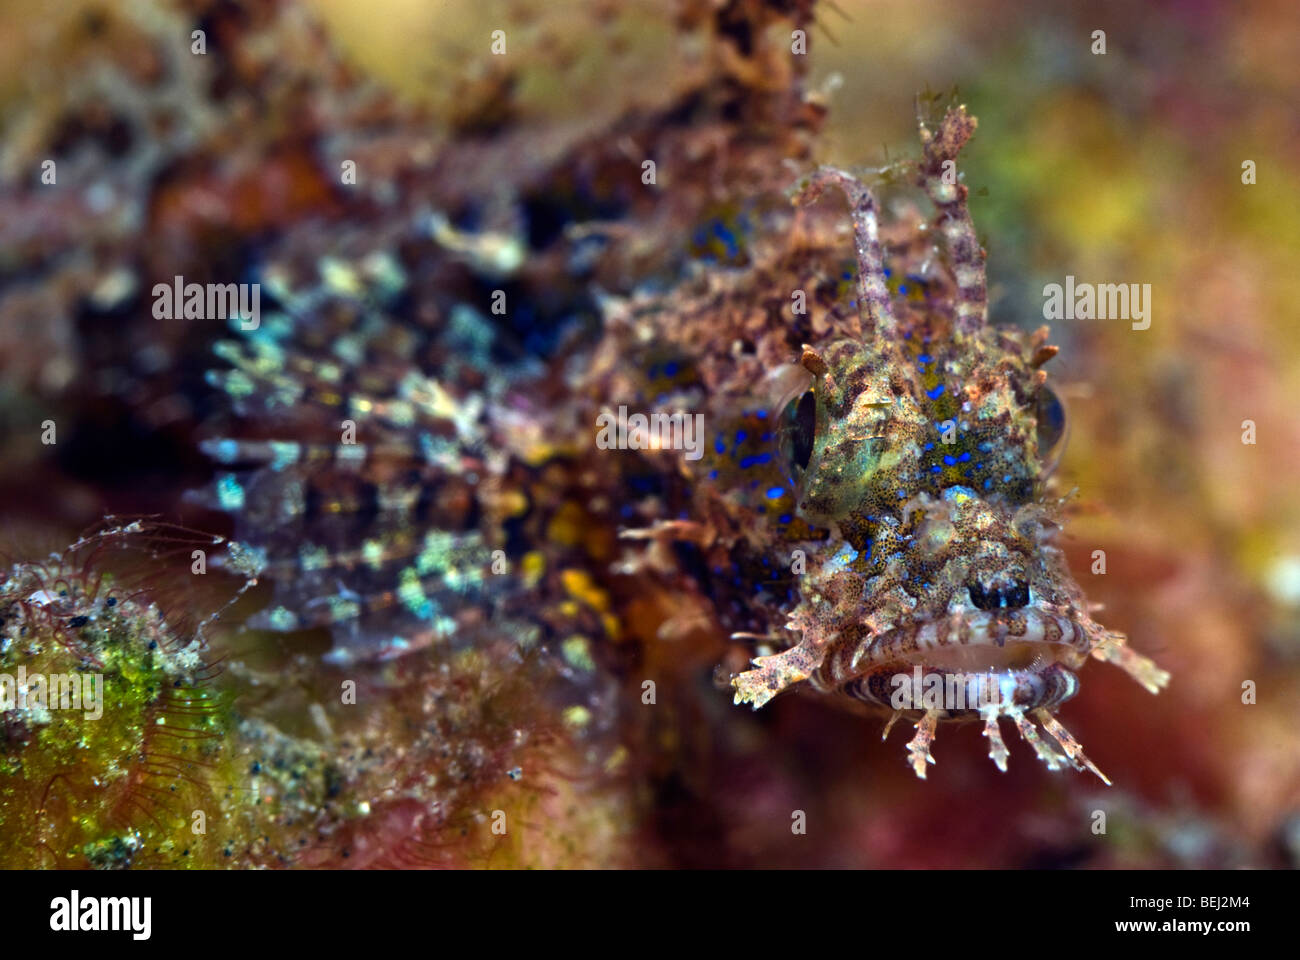 Scorpion fish under water. Stock Photo